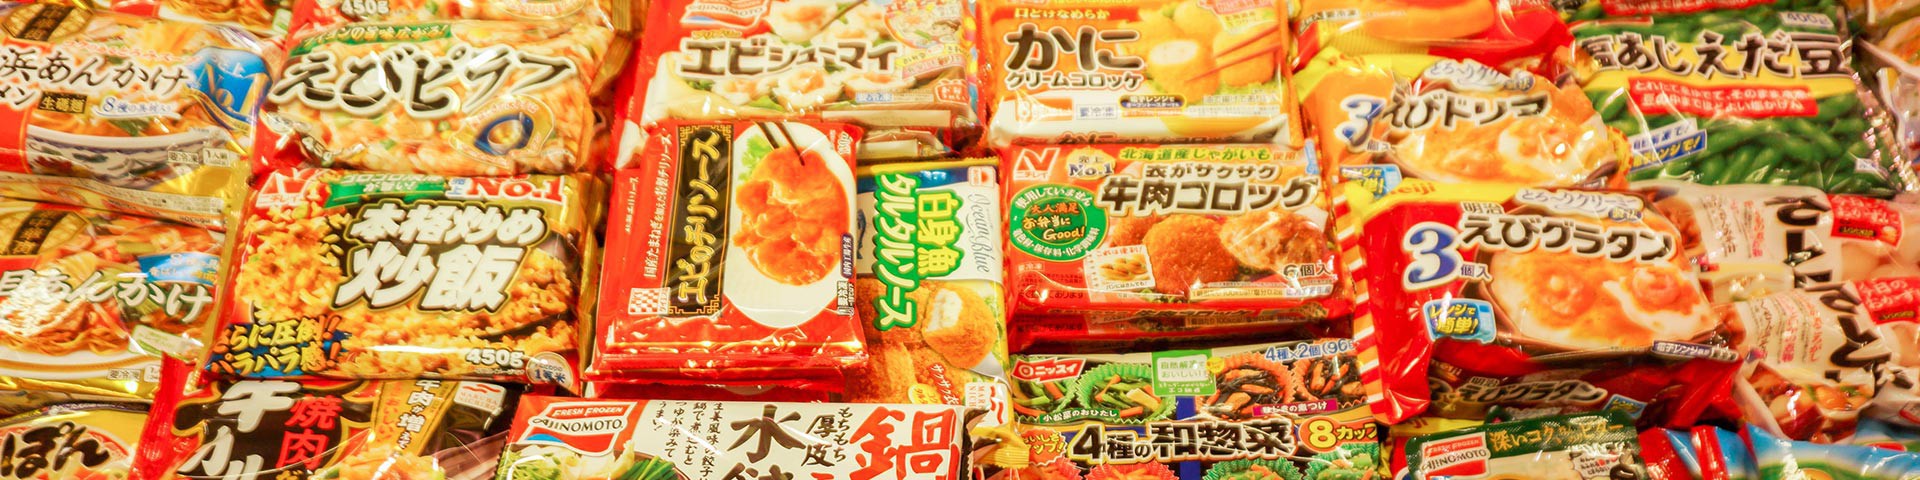 Produits surgelés japonais et produits d'alimentation réfrigérés